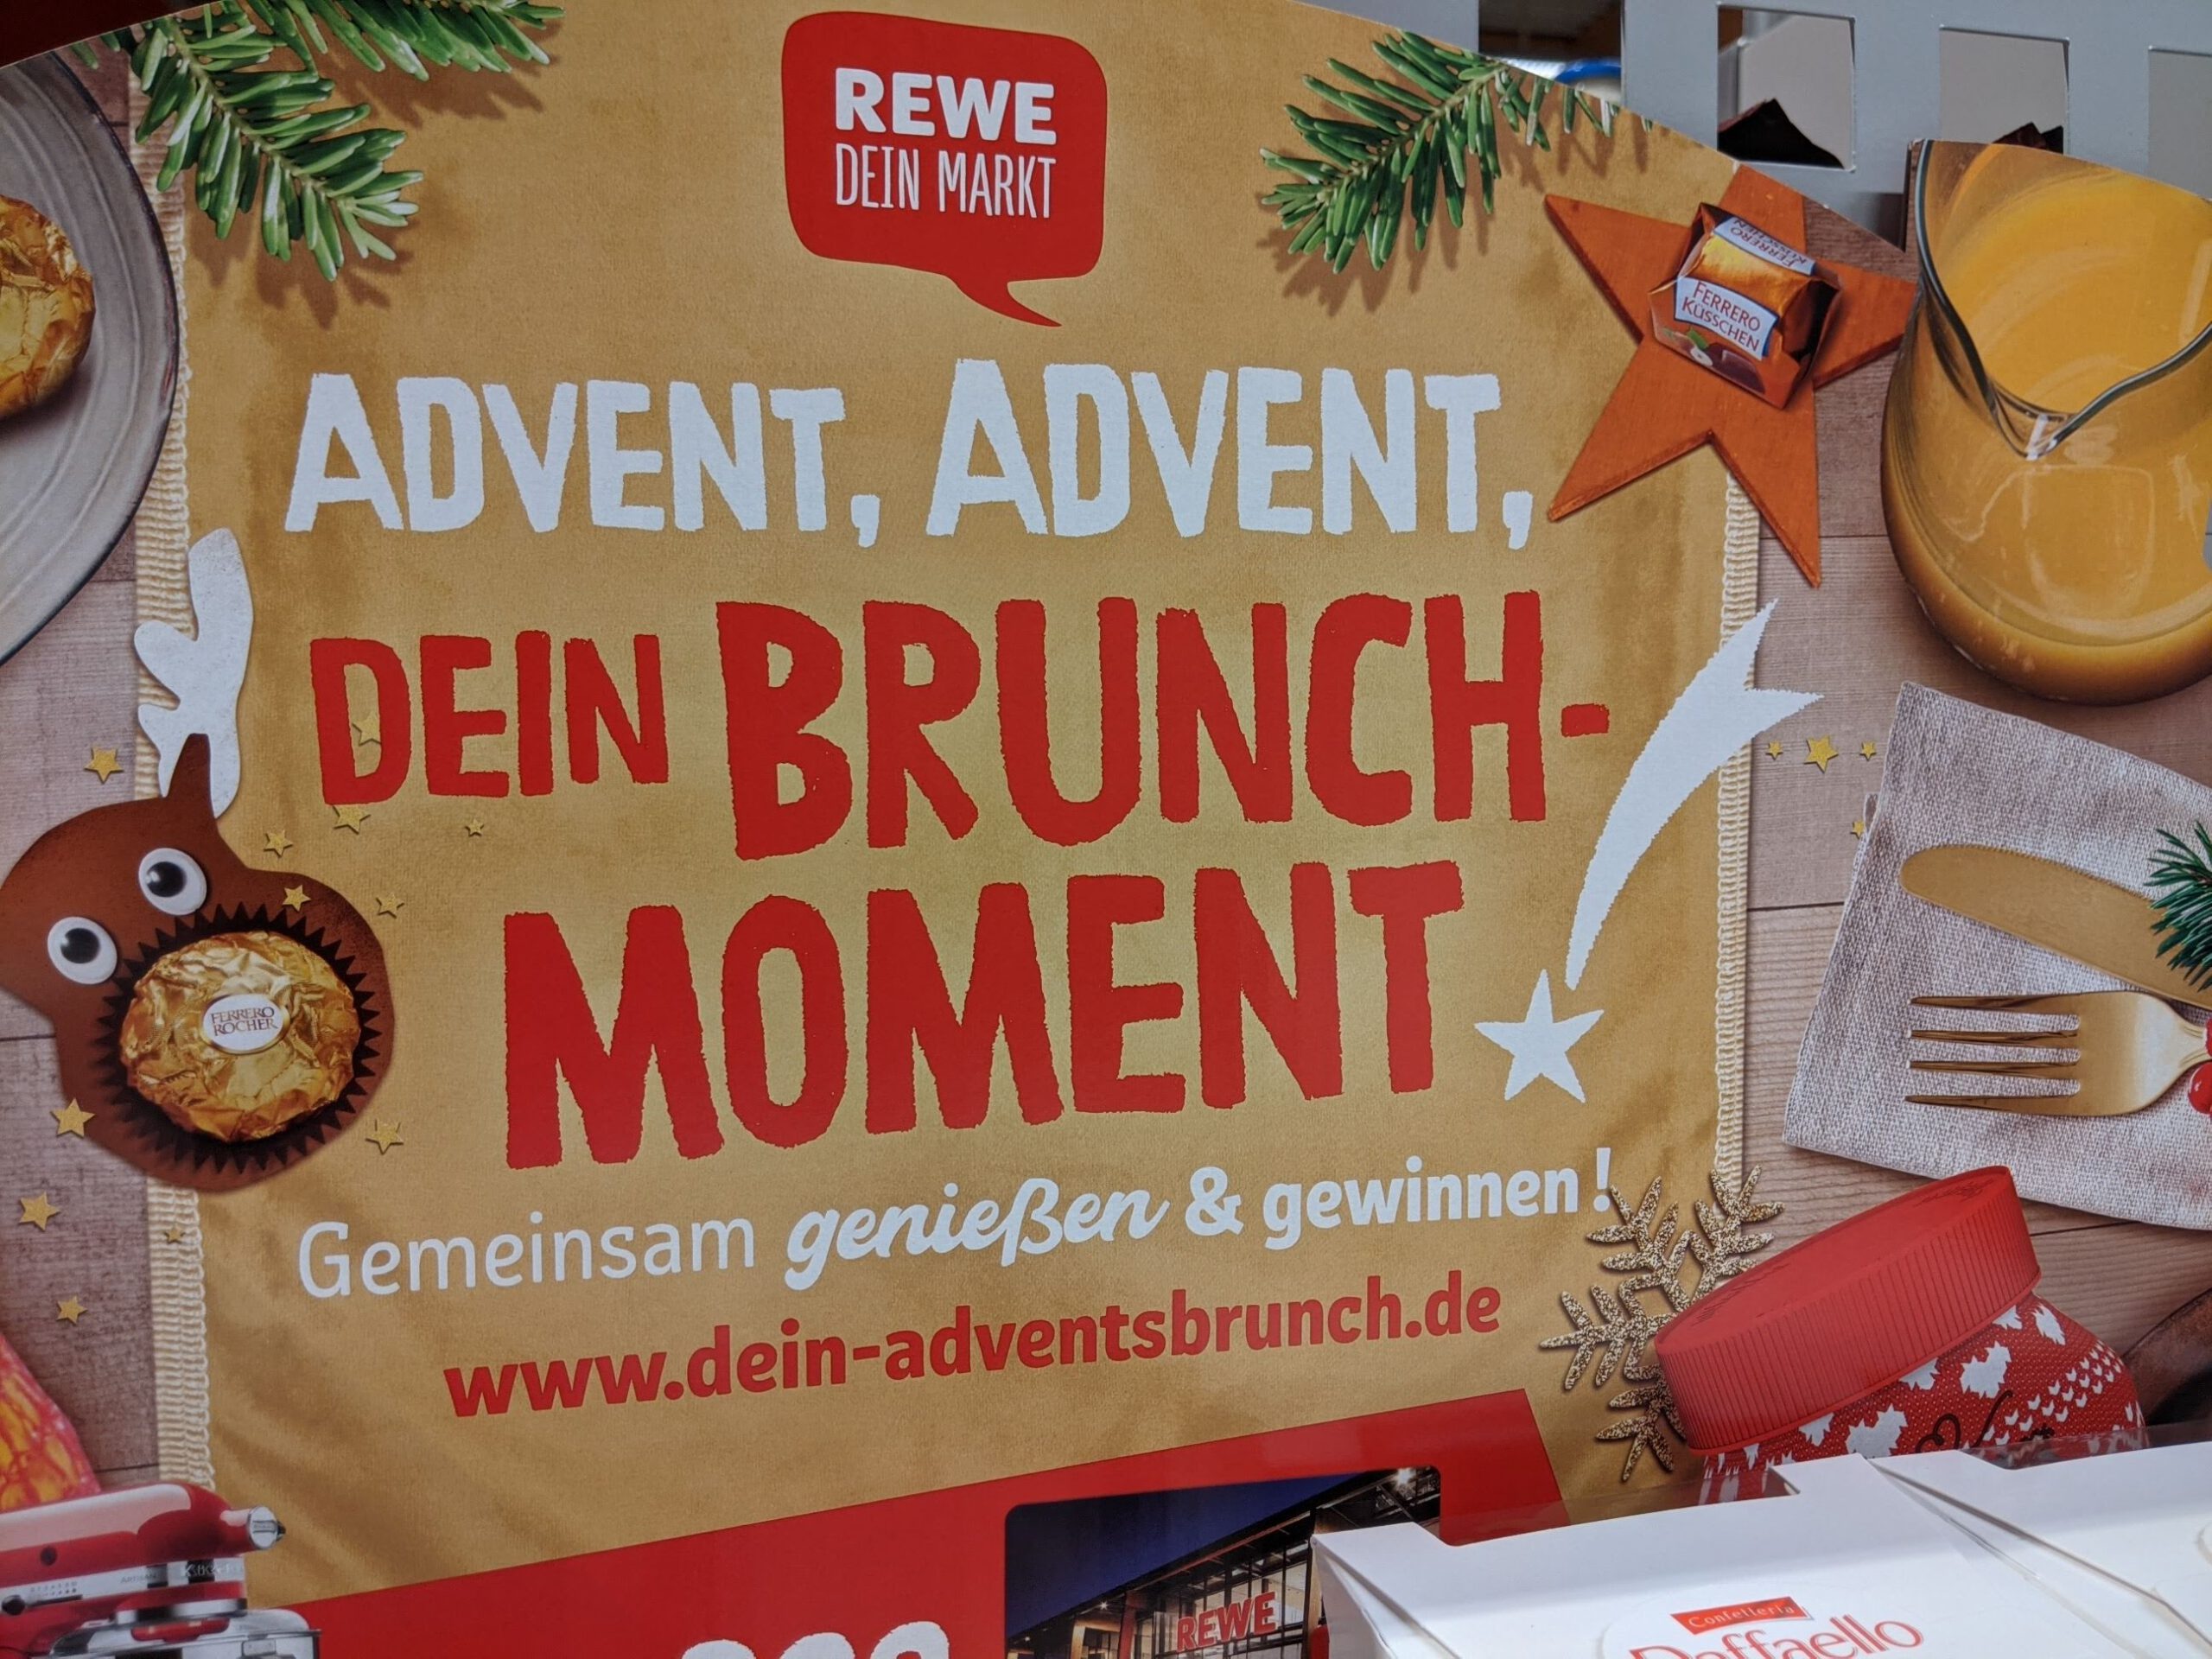 Rewe und Ferrero Brunchmoment: Adventsbrunch gewinnen - Brunchboxen